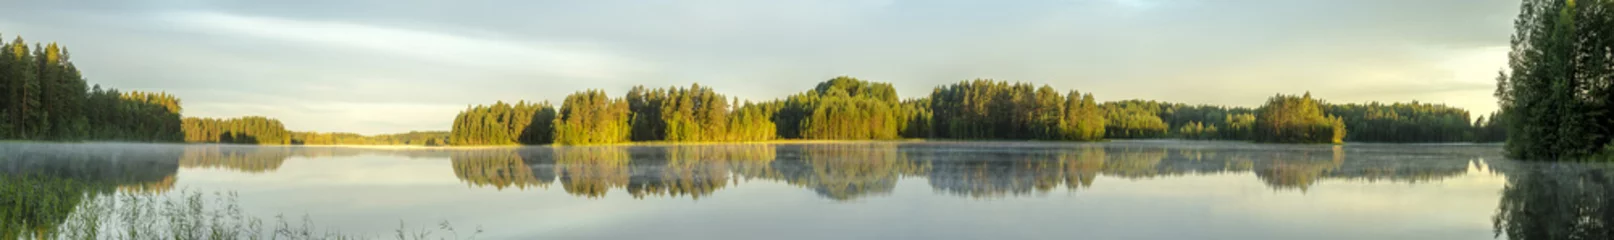 Papier Peint photo Lavable Panoramique vue panoramique sur la rive calme du lac en Europe avec brouillard, reflet des arbres et verdure à l& 39 aube